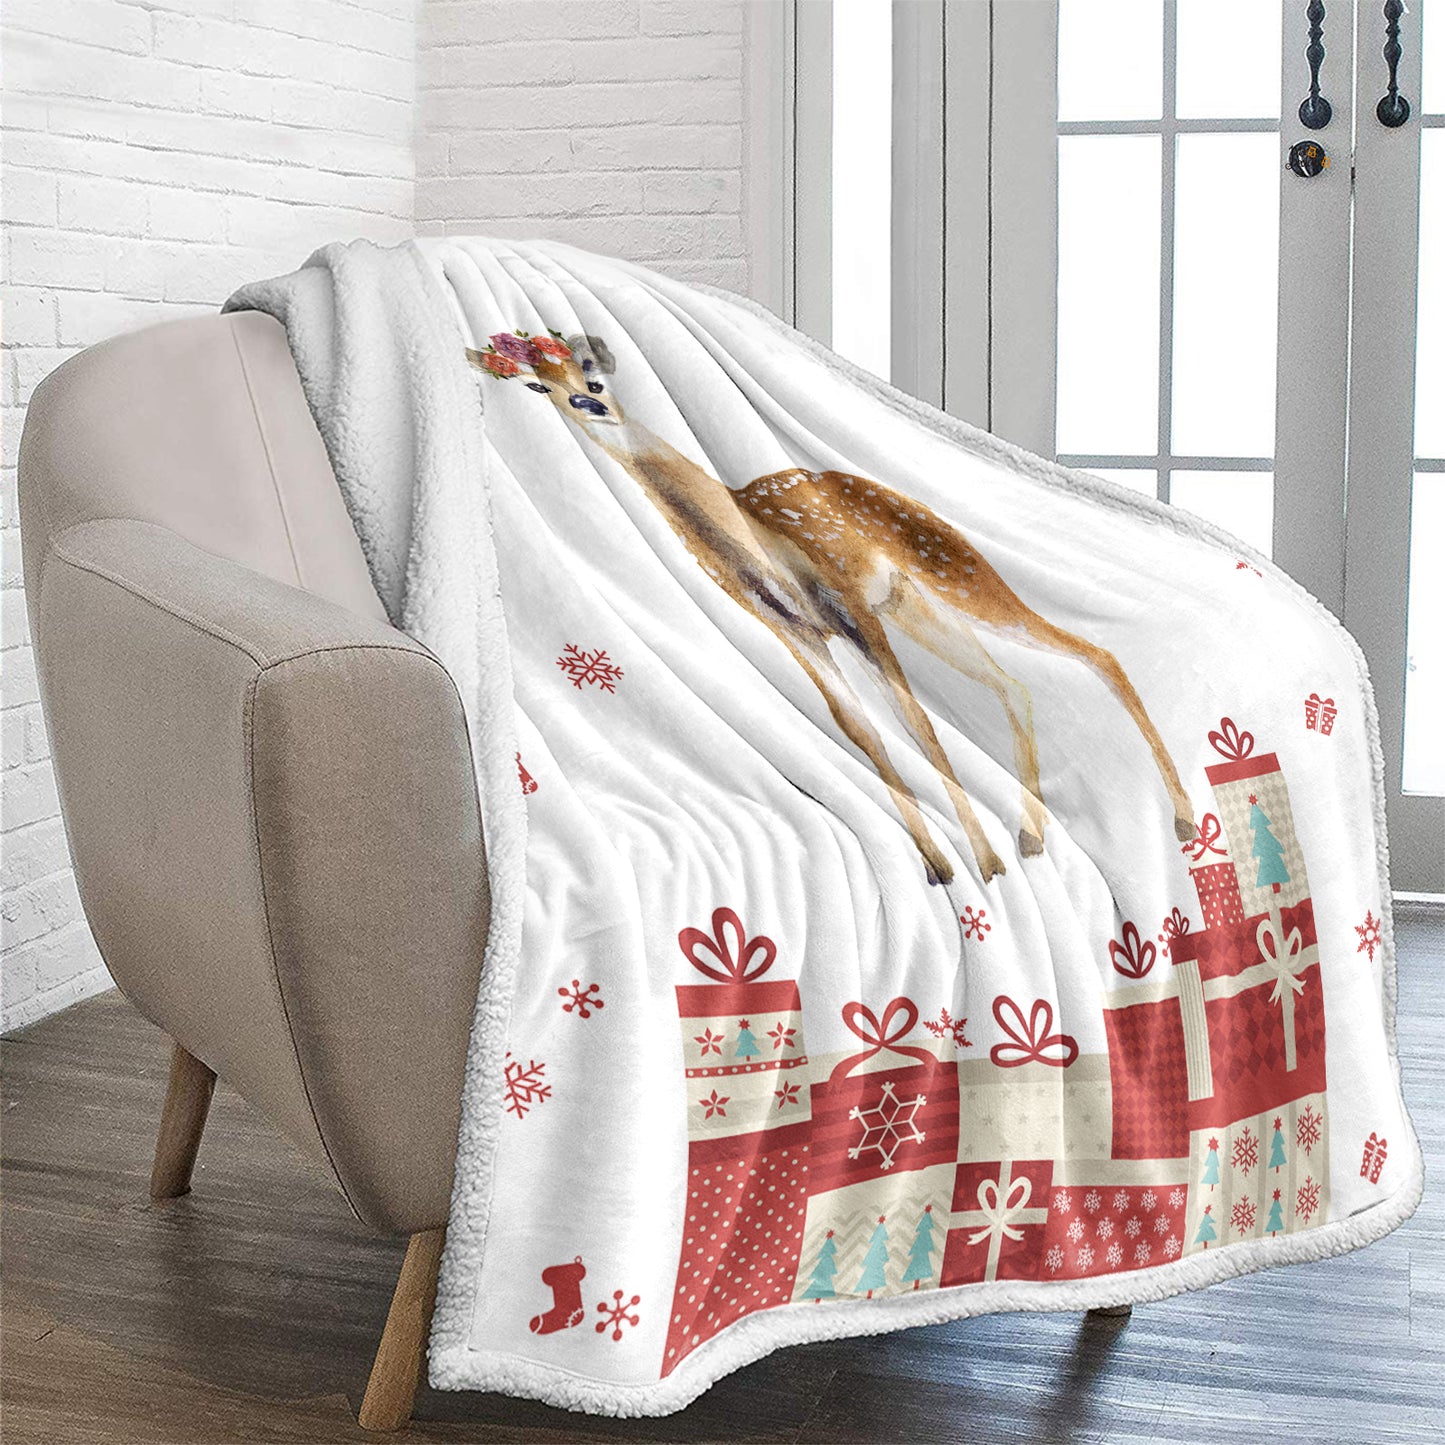 WONGS BEDDING Christmas sika deer blanket